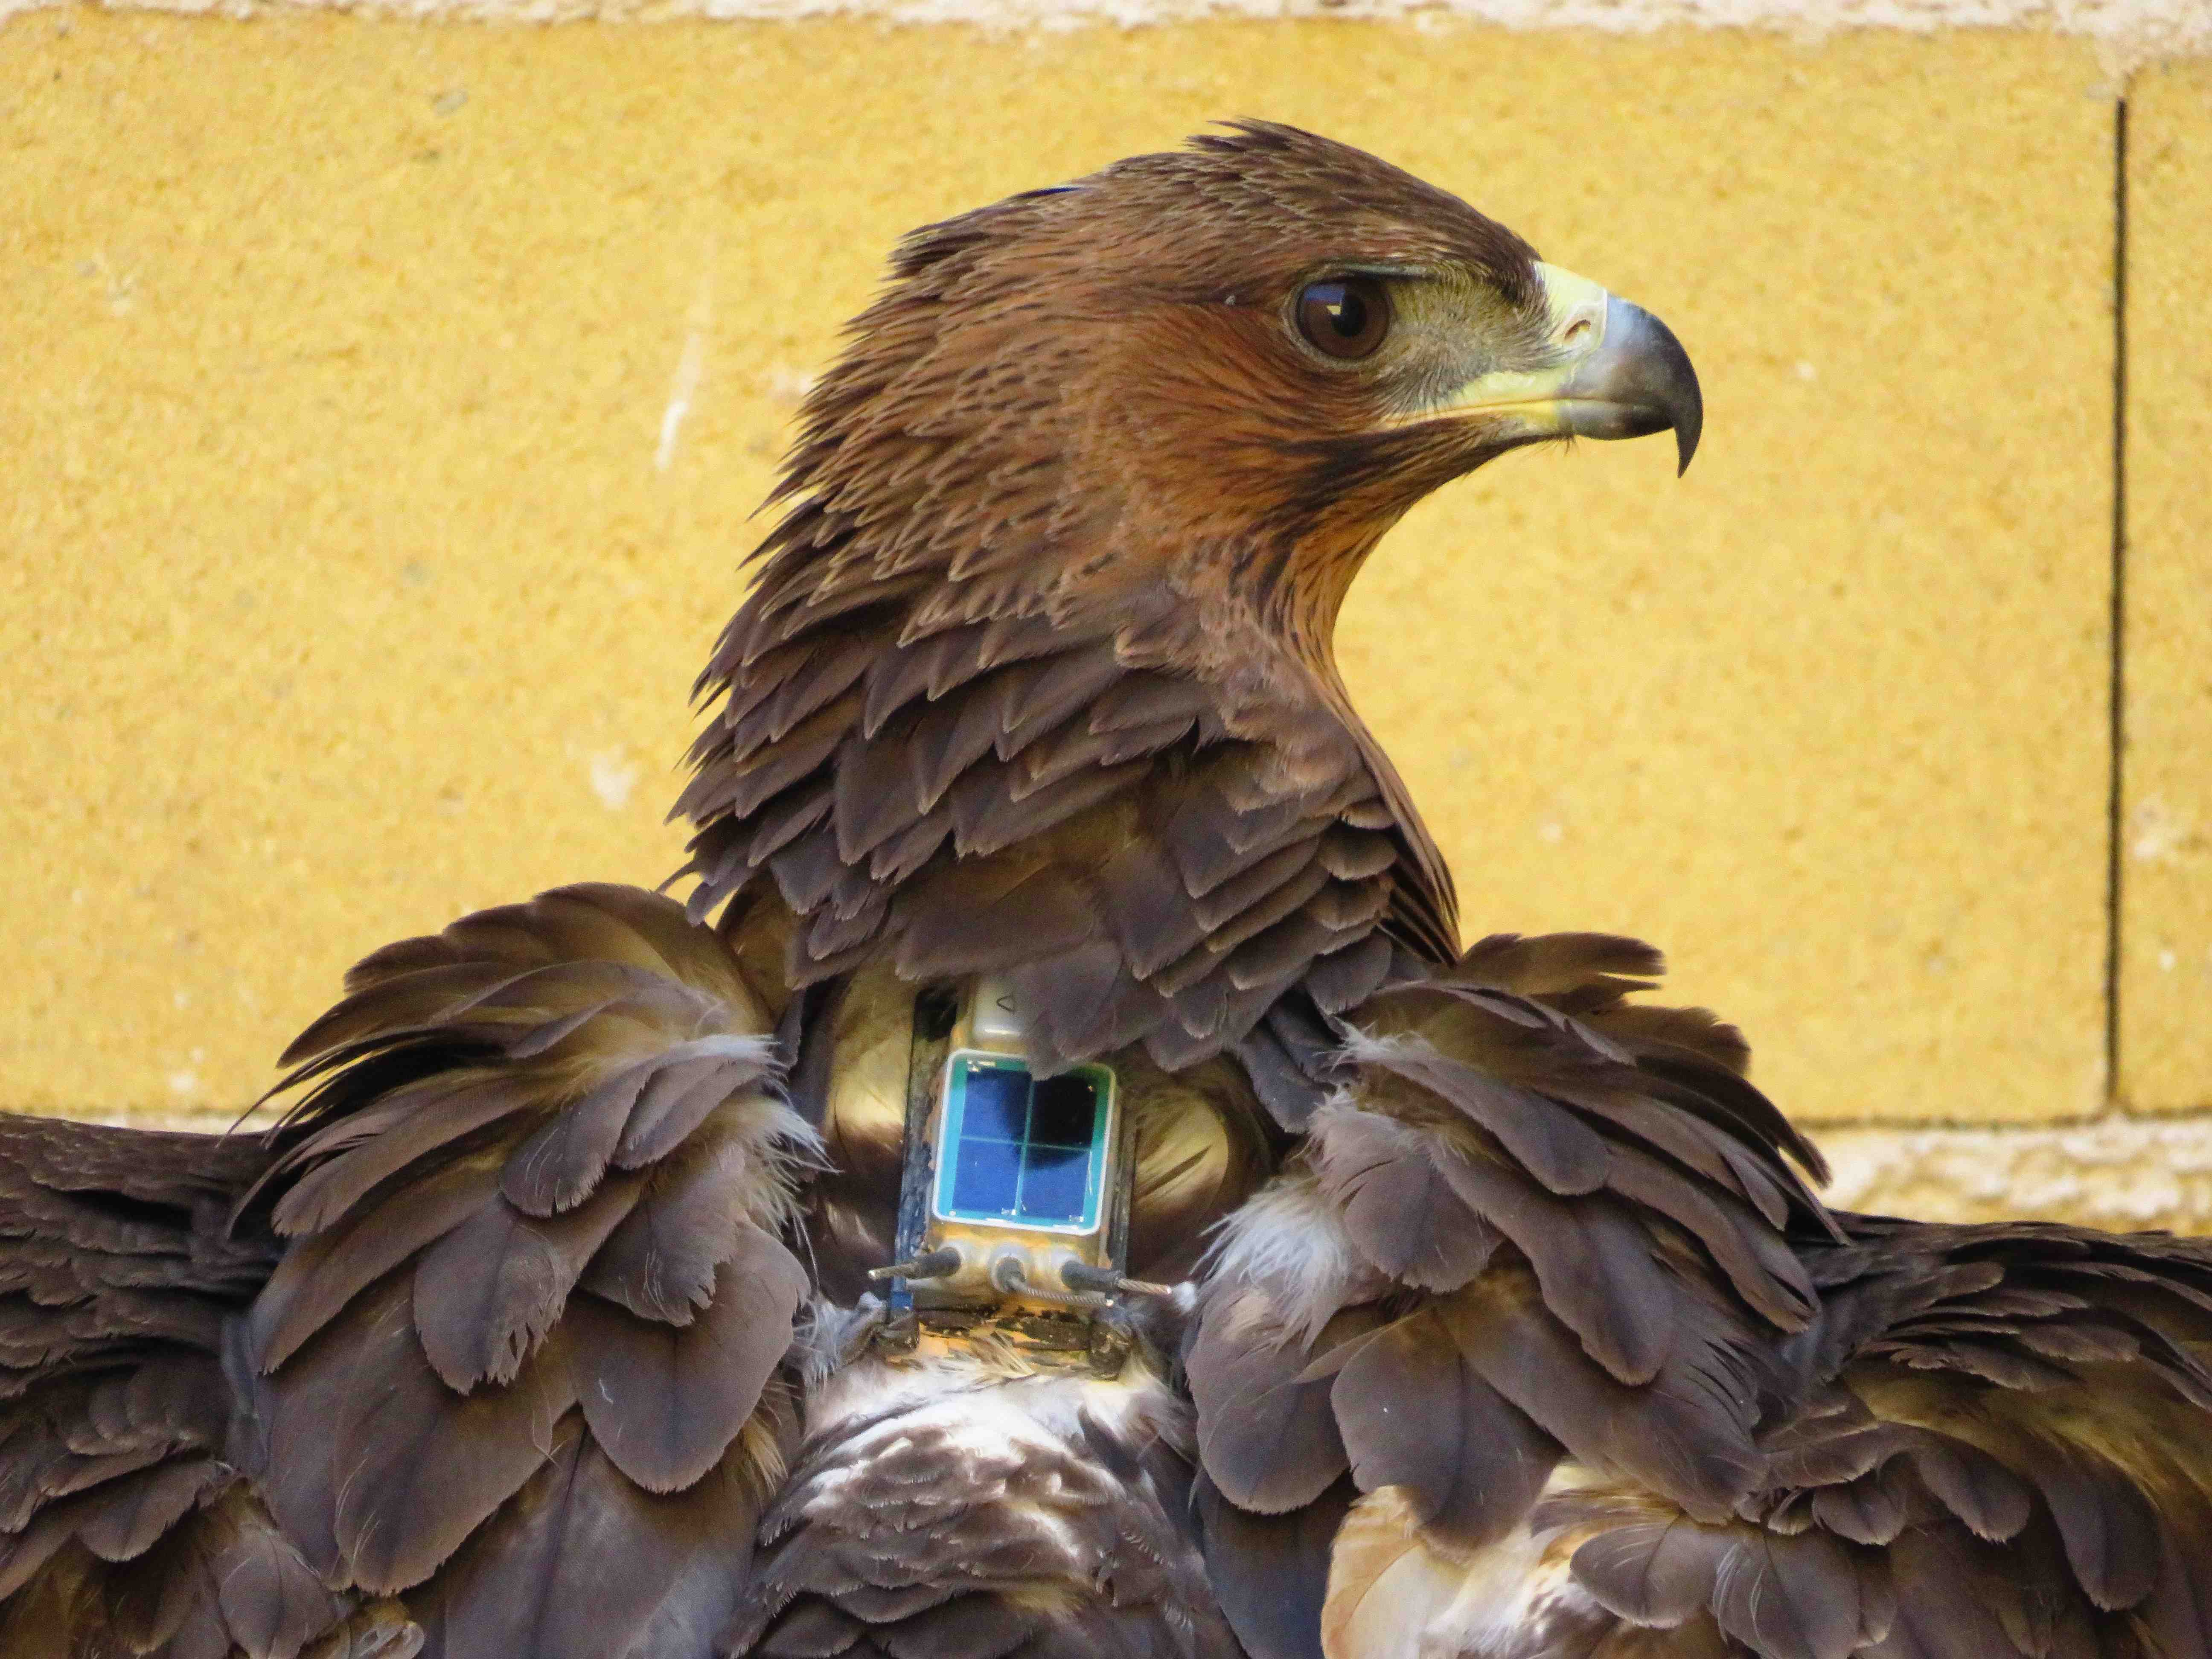 Águila de Bonelli con un emisor GPS a su espalda, antes de ser trasladada a una zona de reintroducción. Imagen: Aquila a-LIFE / Grefa